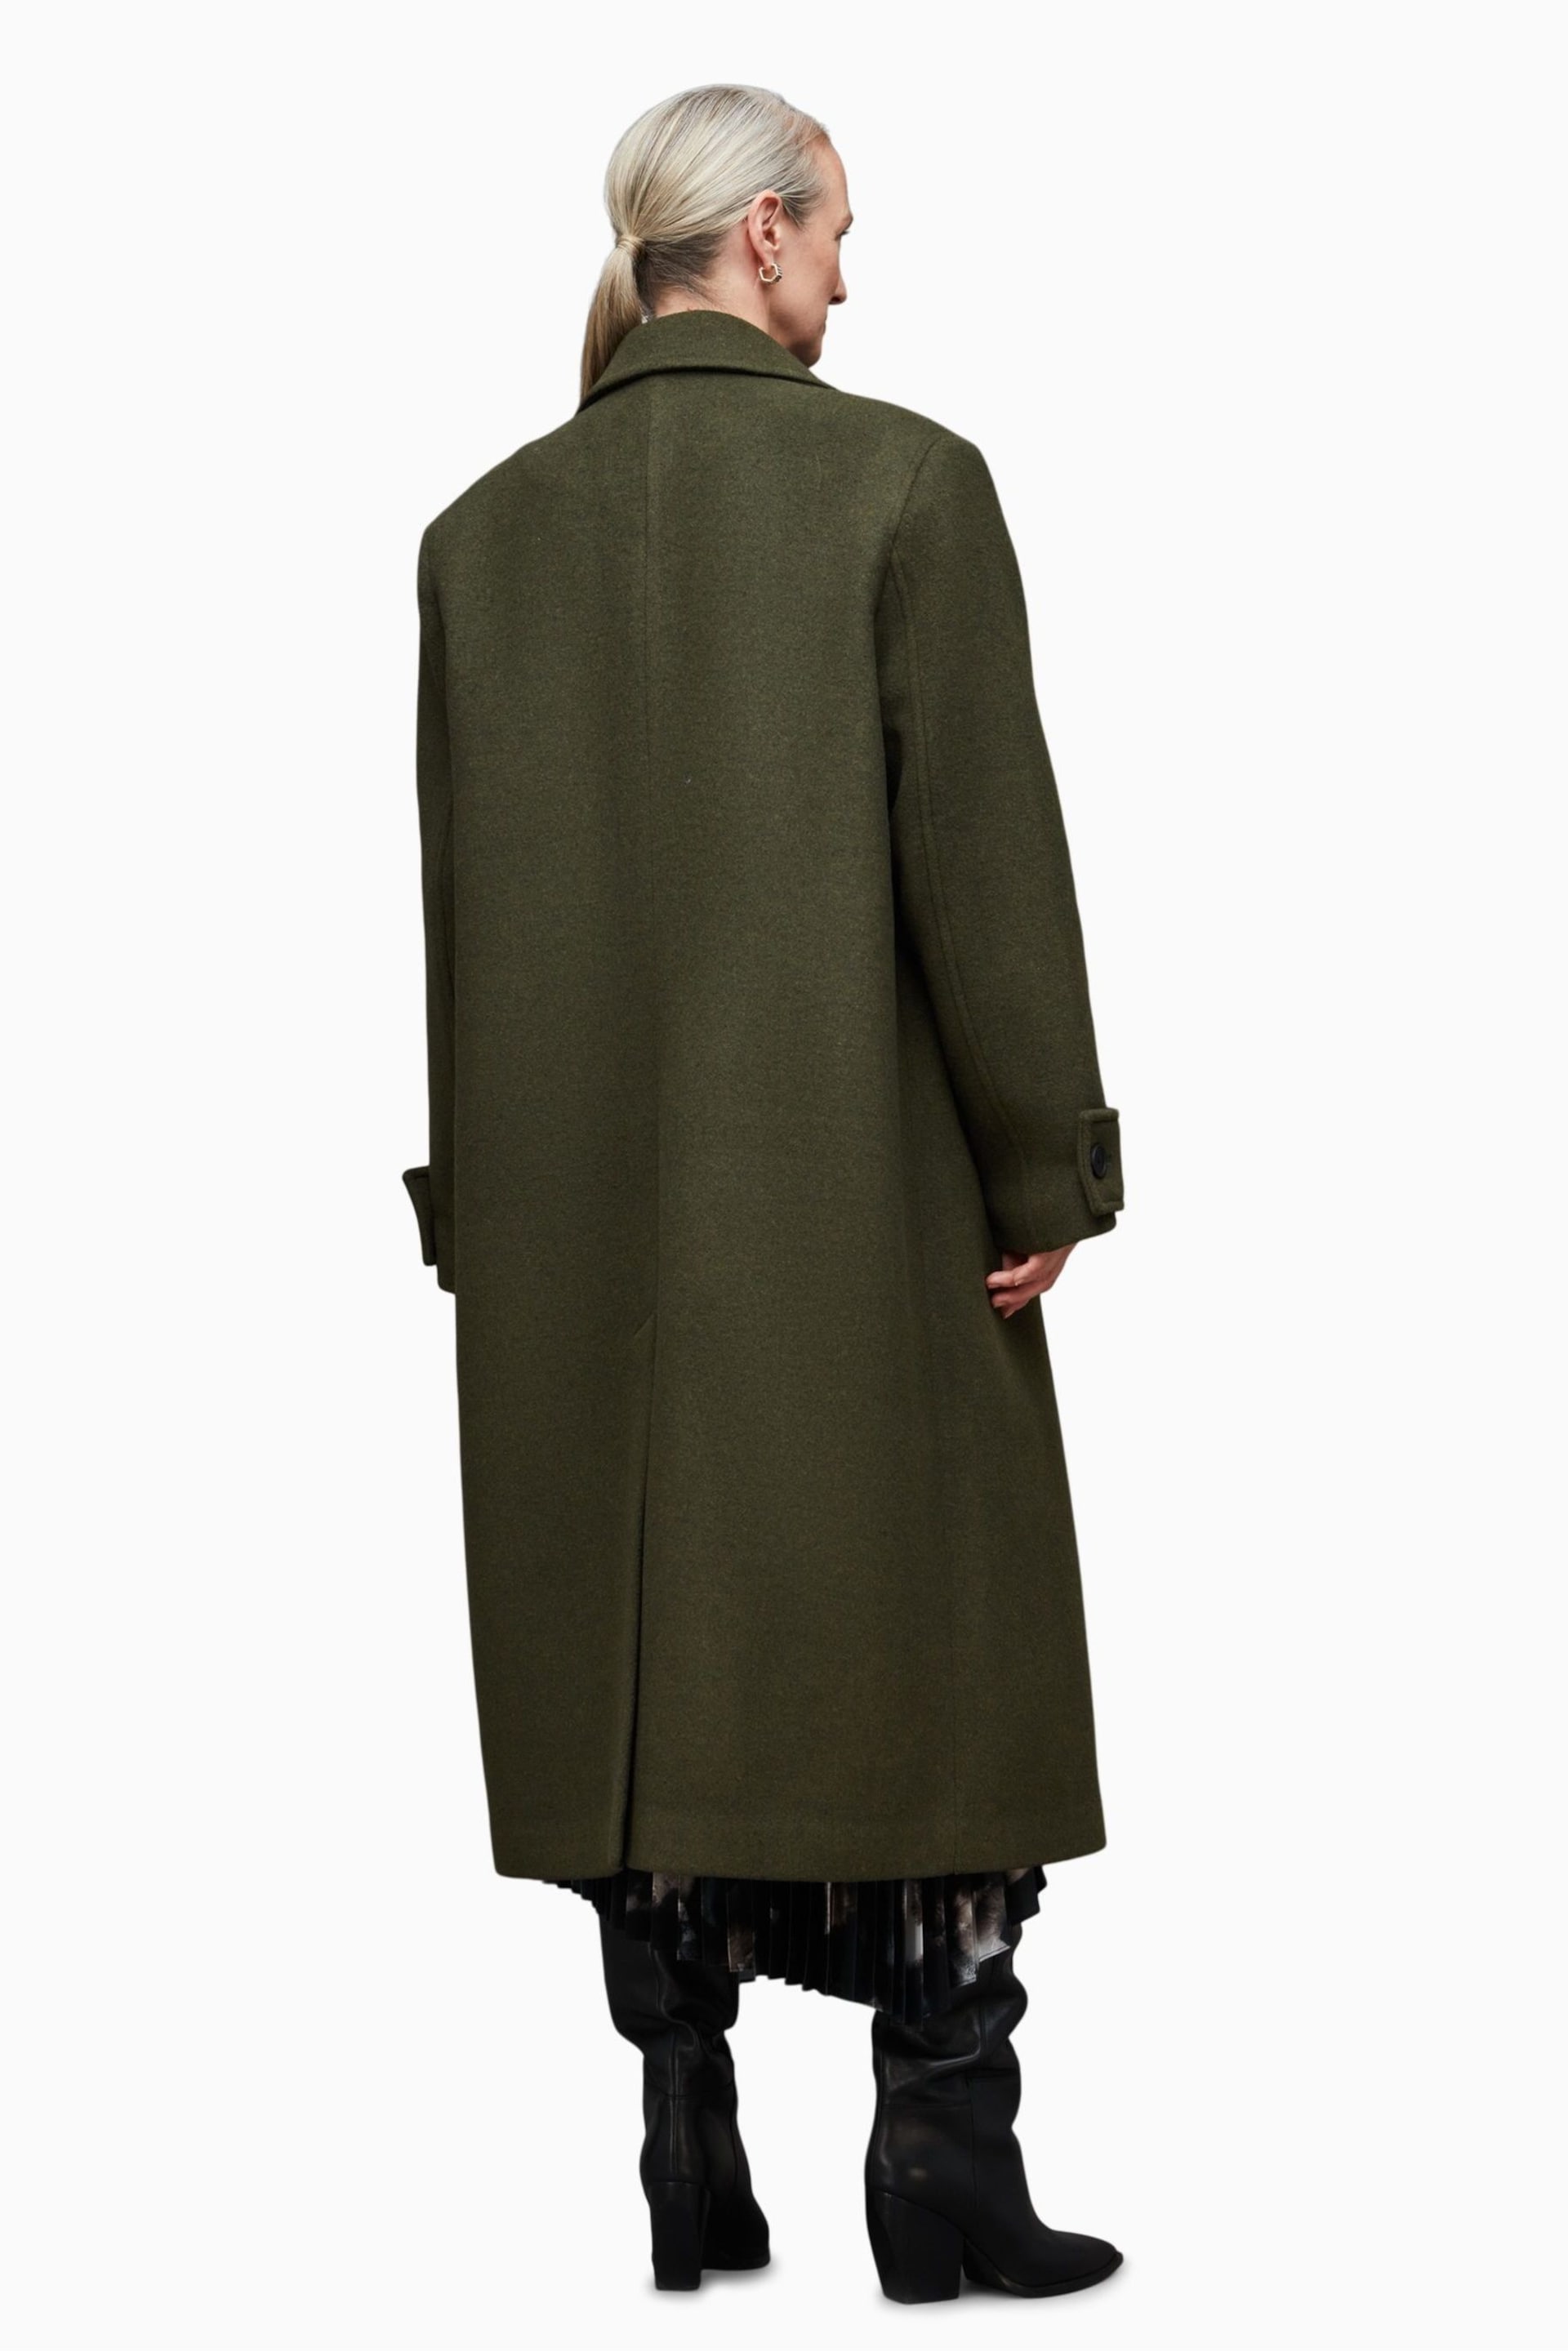 AllSaints Green Mabel Coat - Image 2 of 8